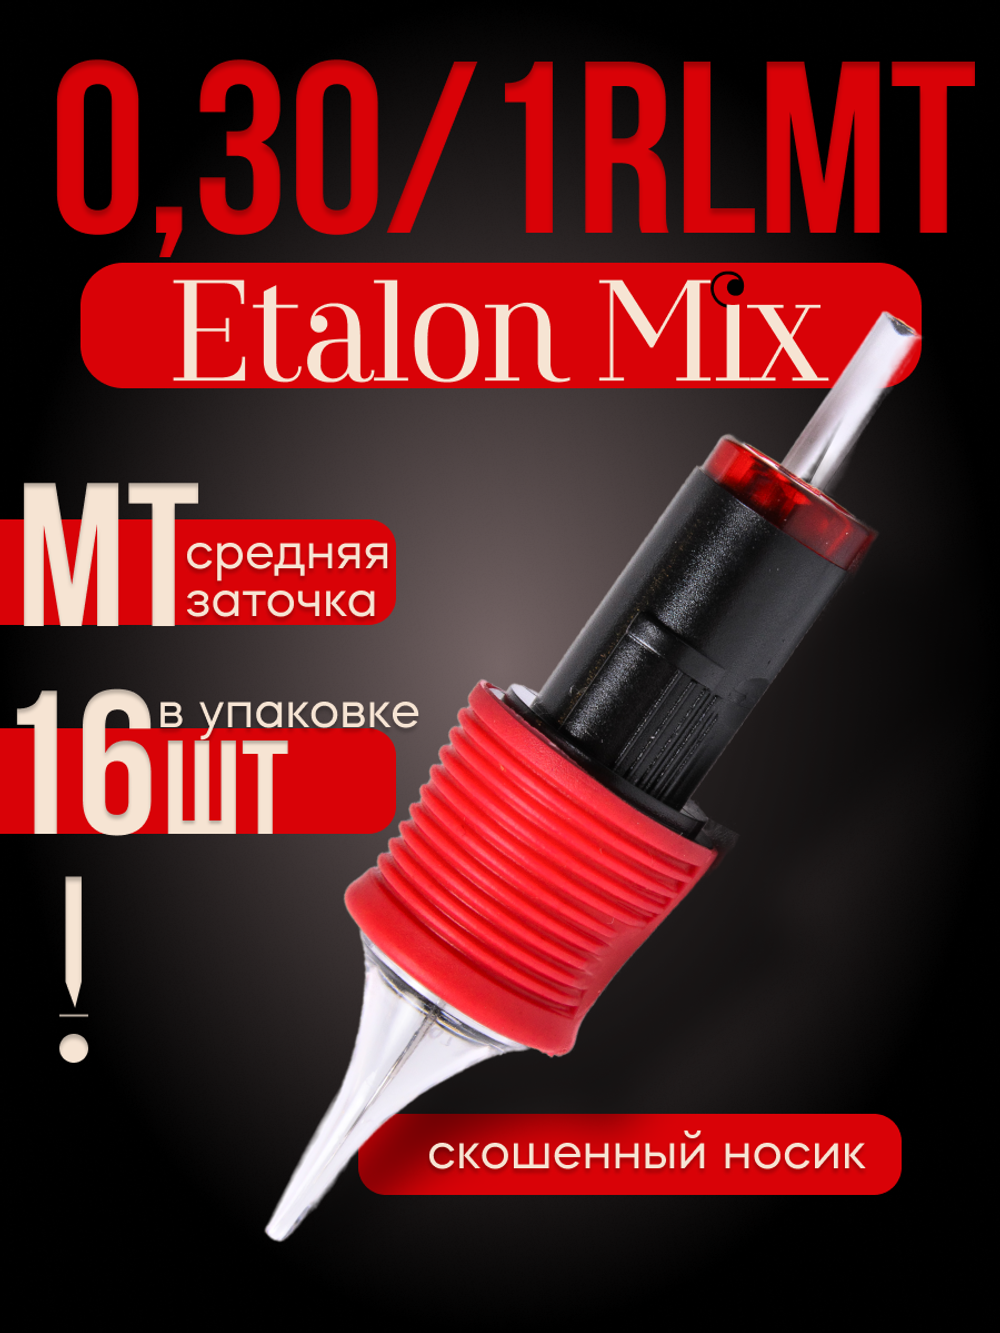 Картриджи для татуажа Etalon Mix 0.30/1RLMT 16 шт